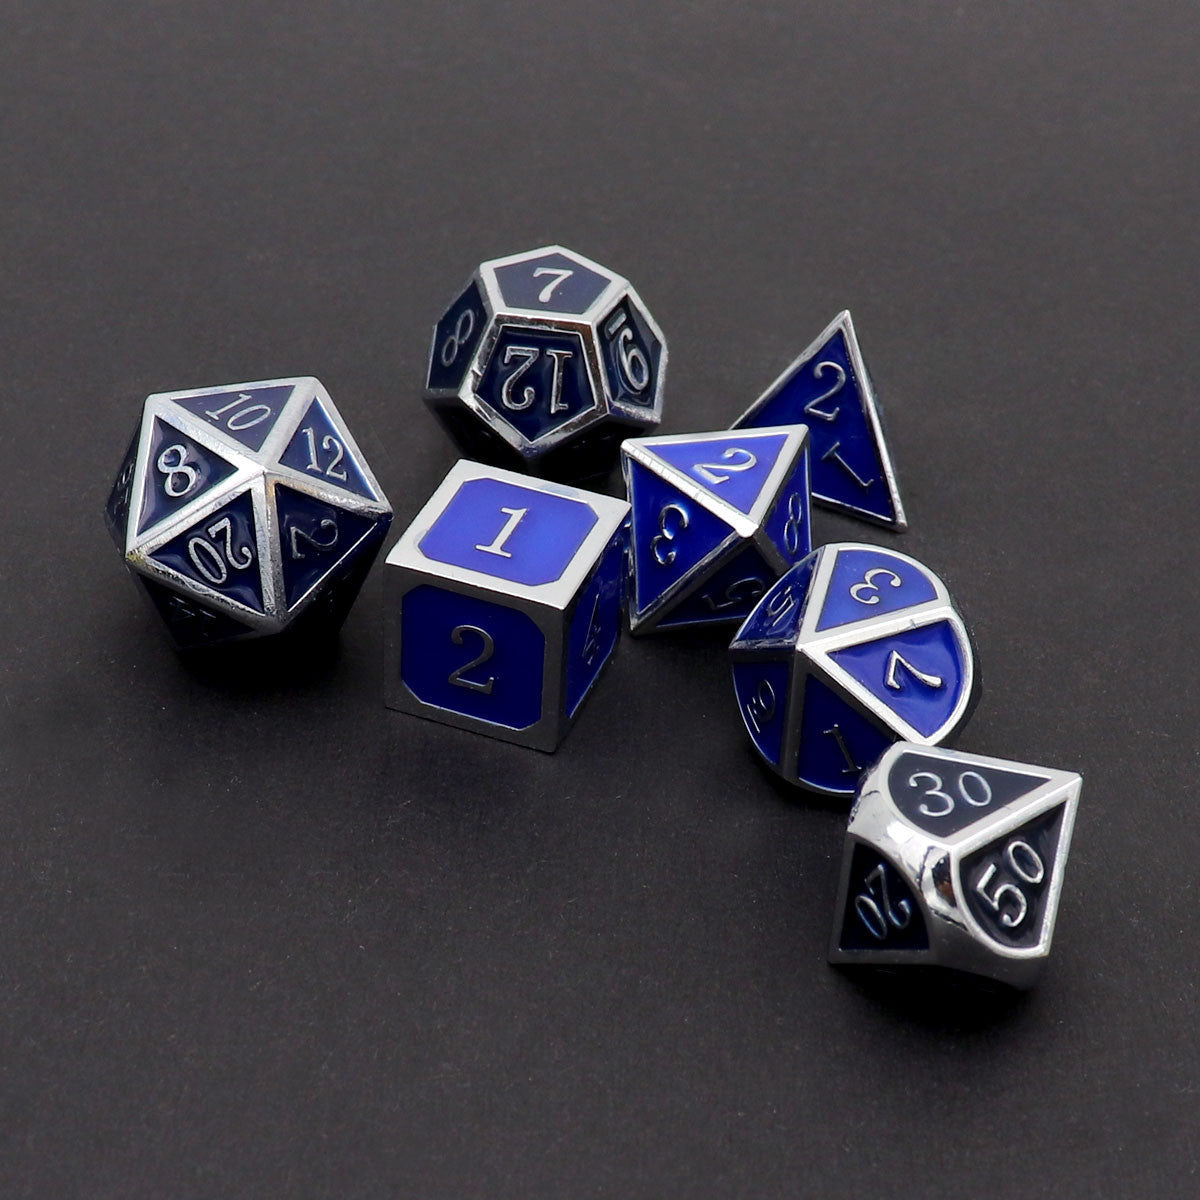 silver black blue dice, metal dice, black blue dice, silver metal dice, color changing dice, metal dice, temperature dice